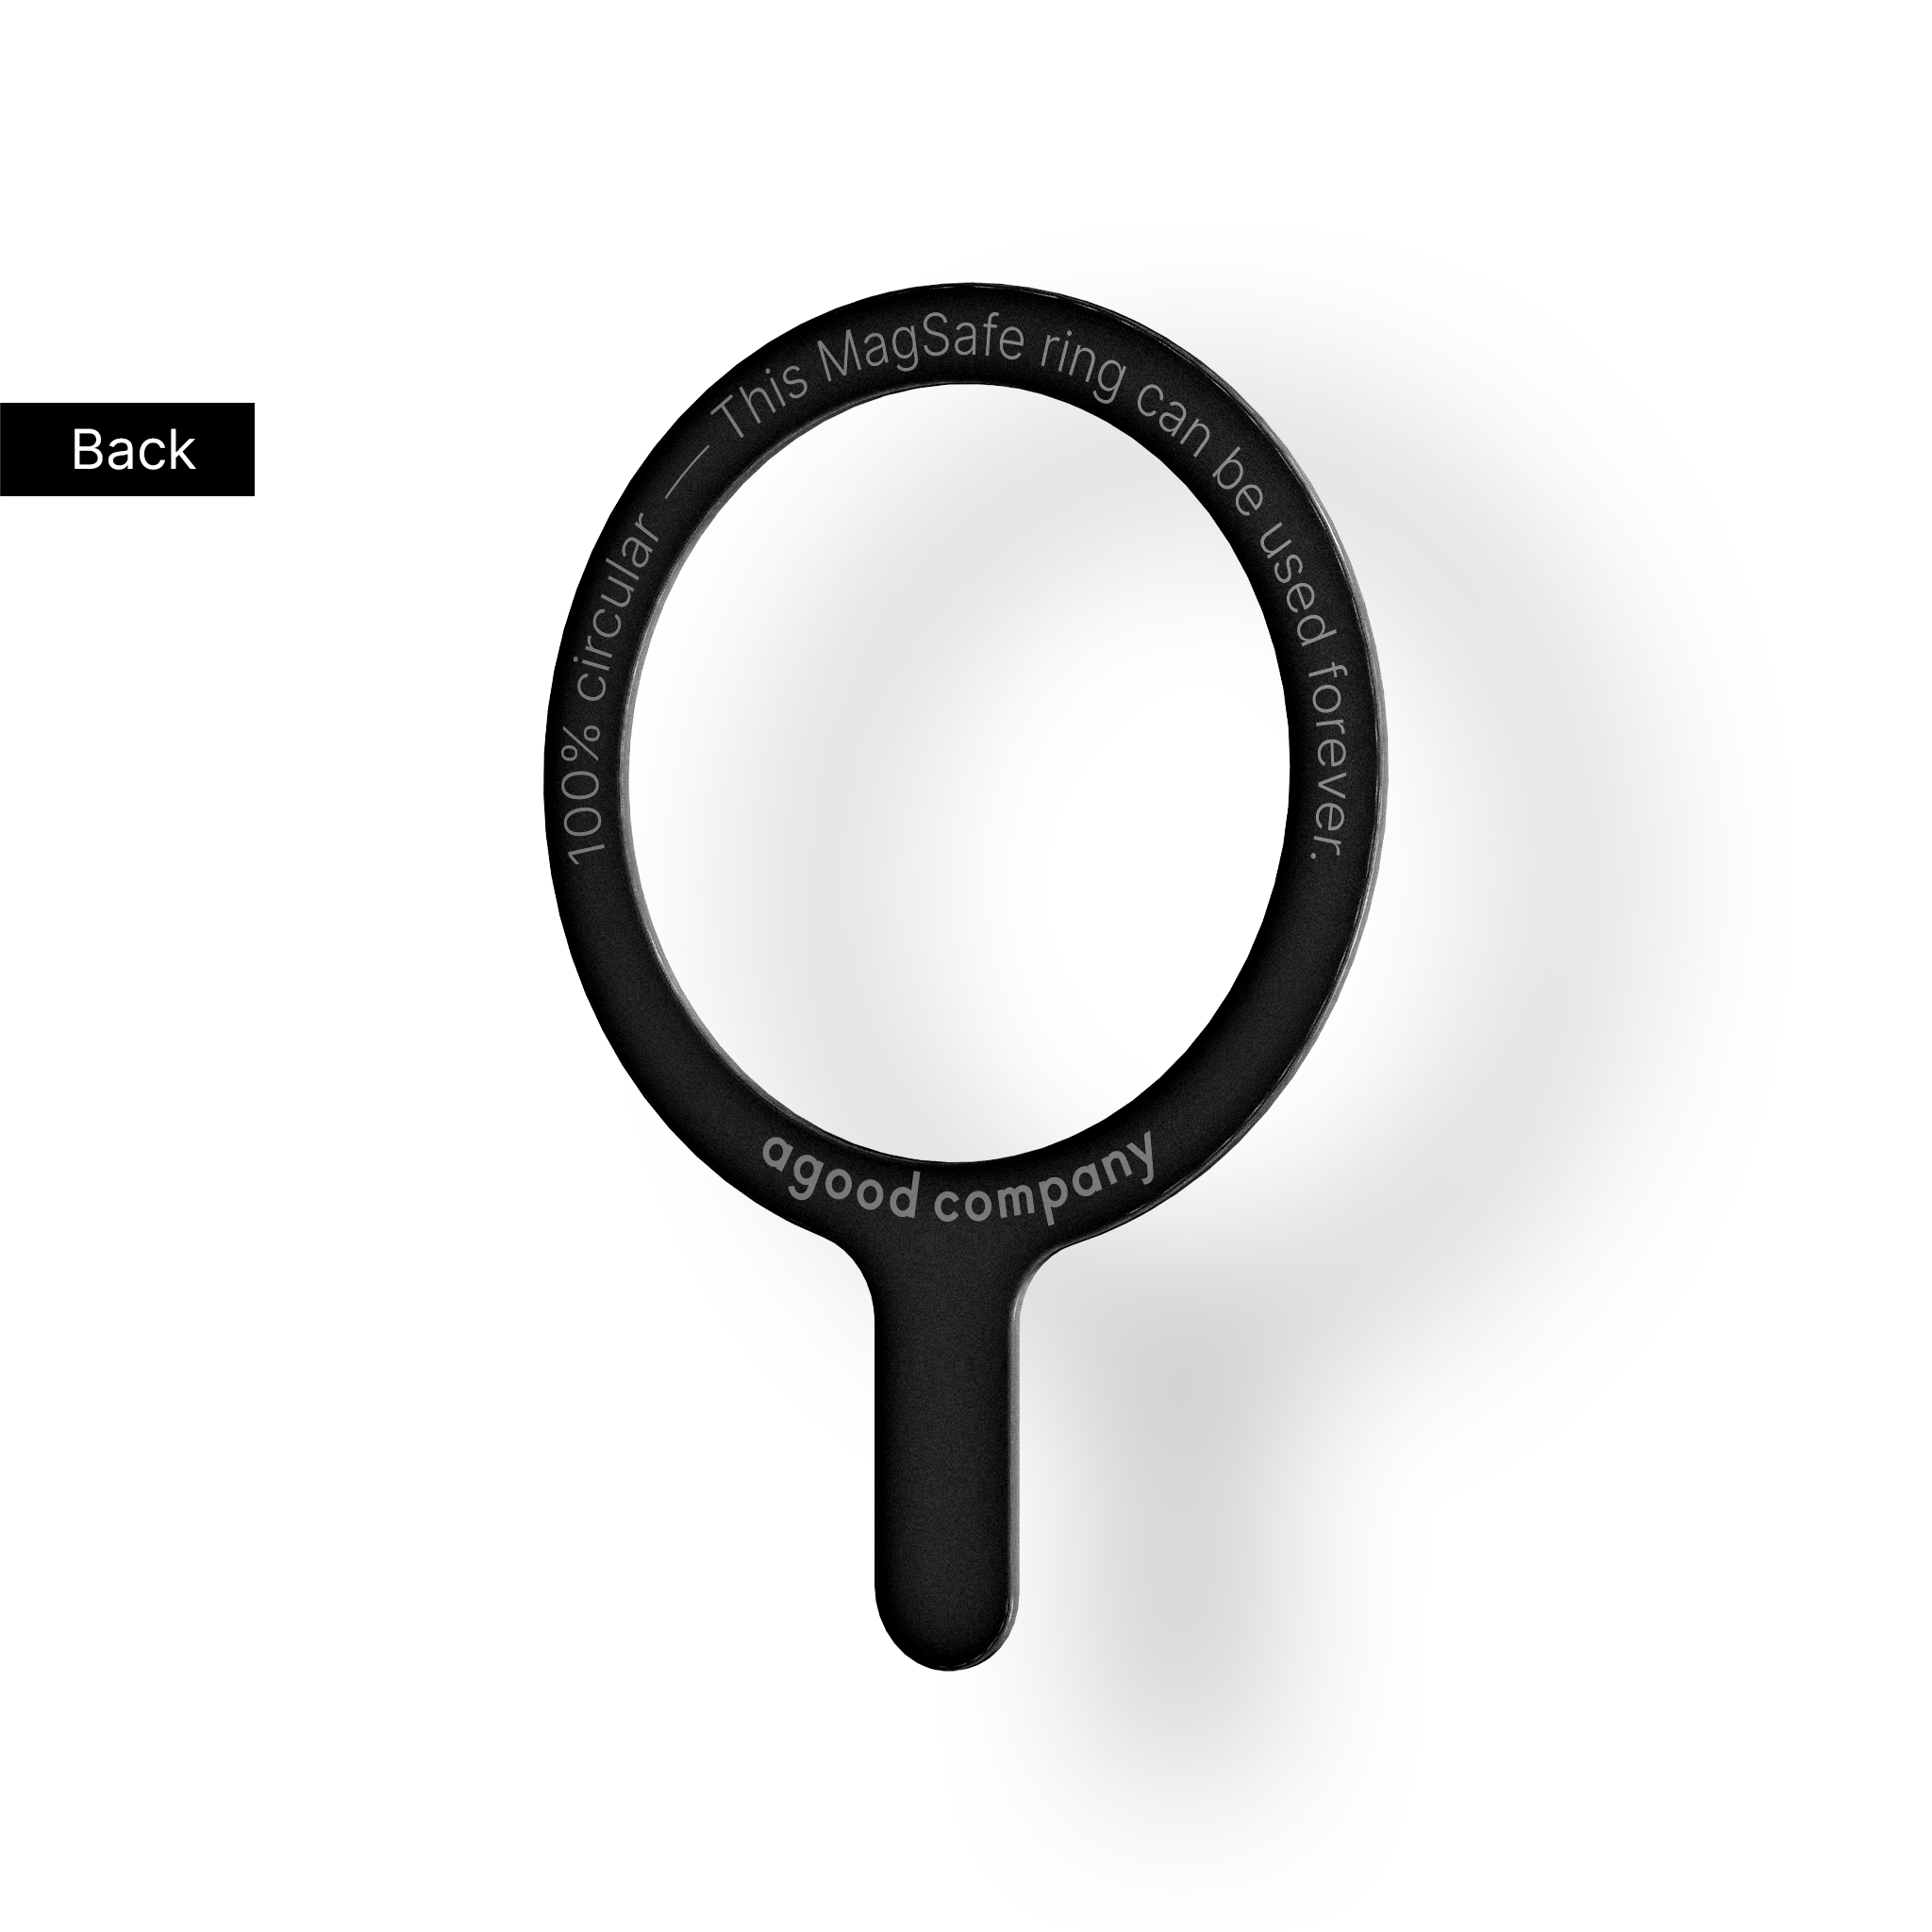 Fjernbar MagSafe-ring, svart